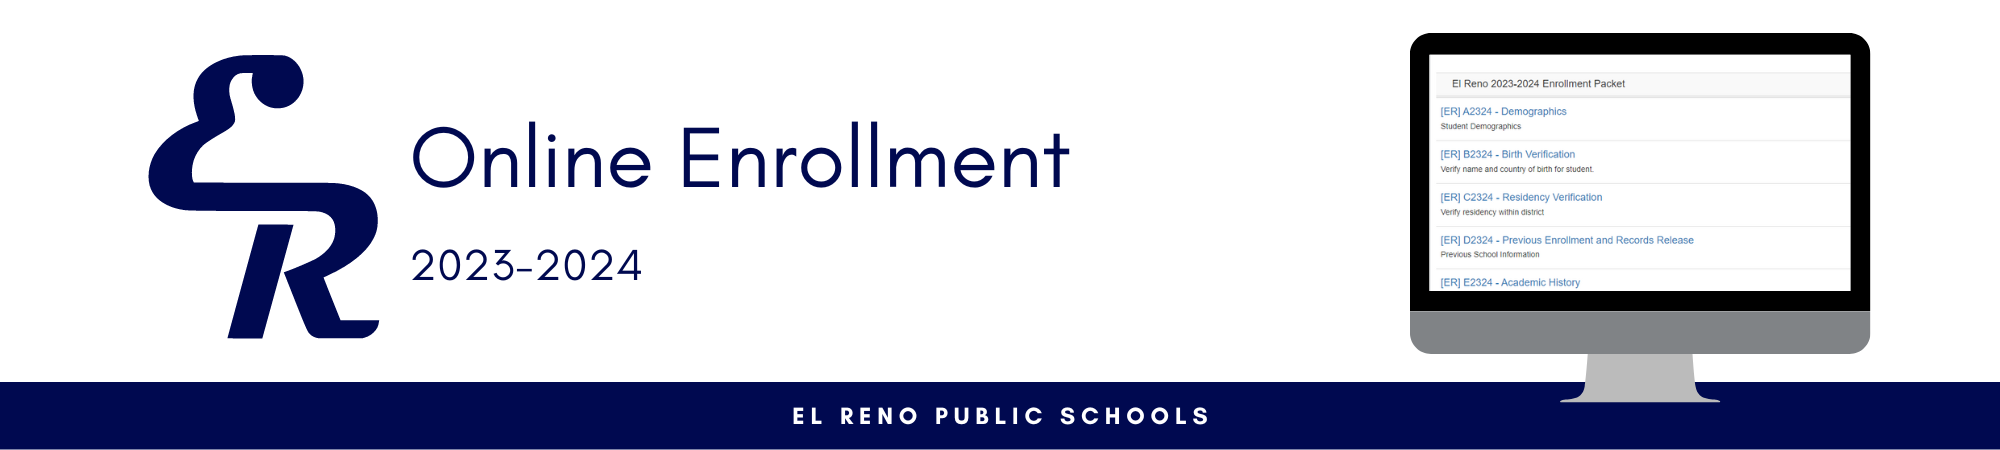 online enrollment 2023-2024